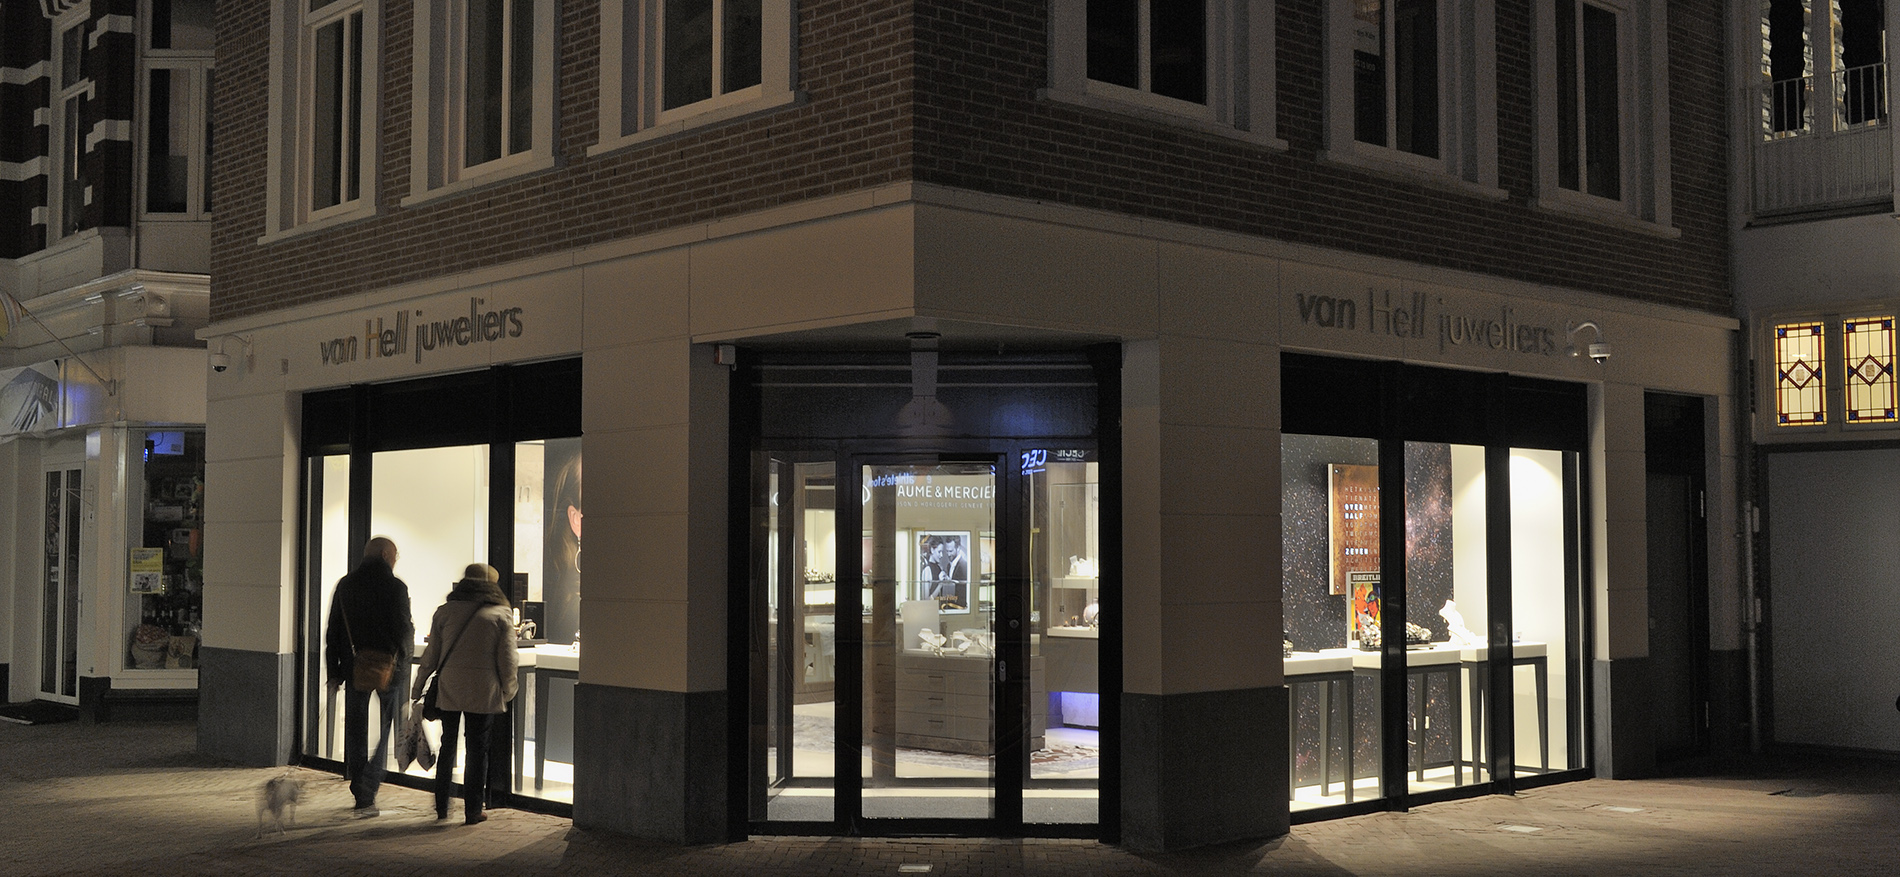 van Hell Juweliers, Apeldoorn: Retail Design en Retail Bouwmanagement - 